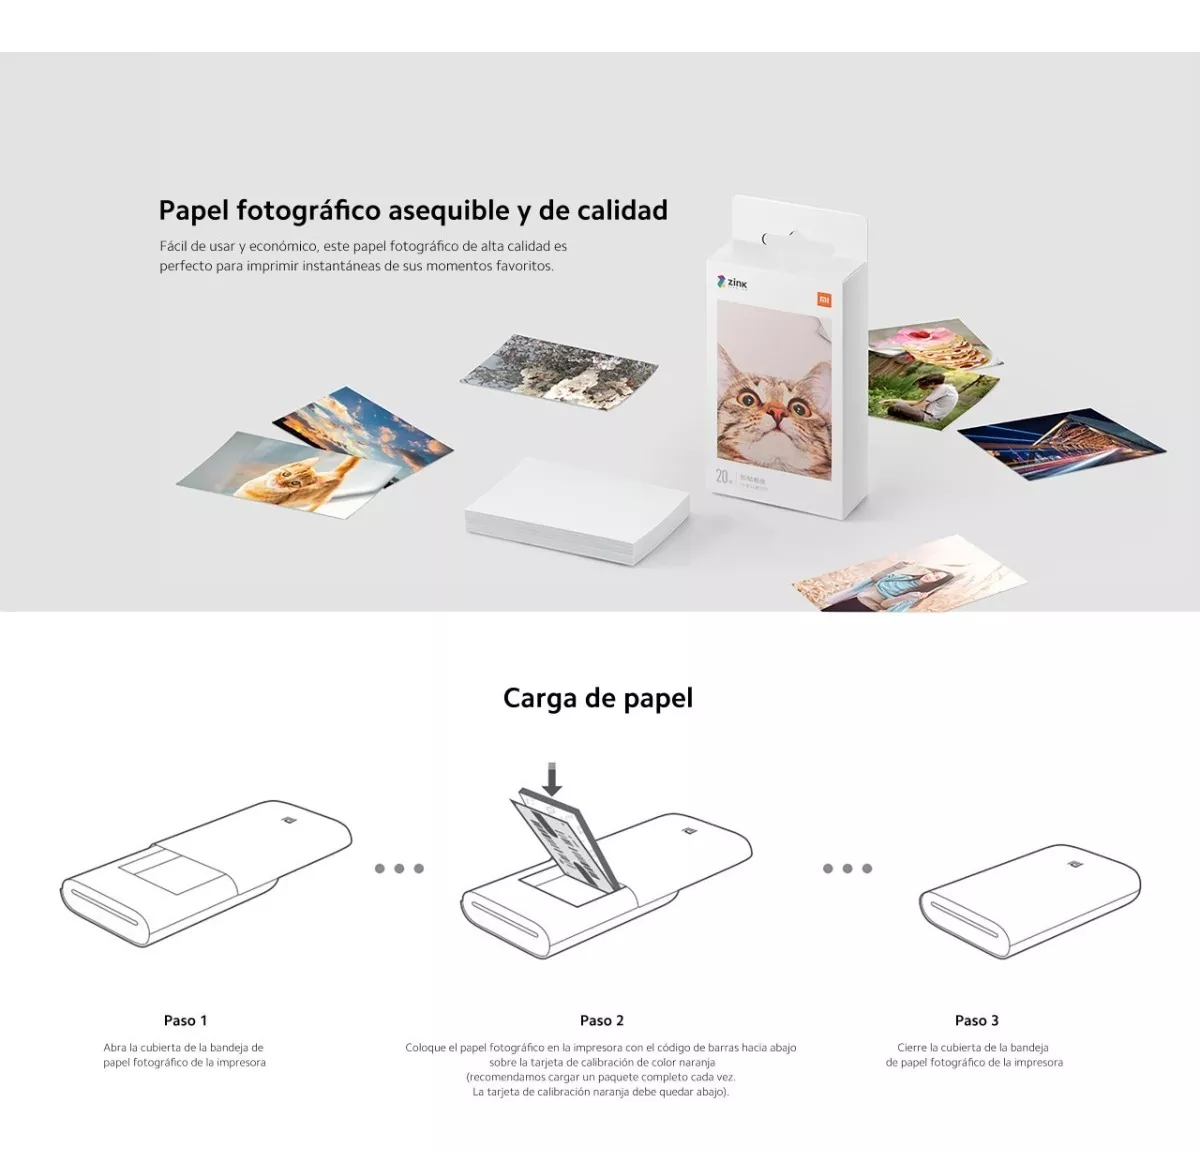 Xiaomi-papel De Impresora Portátil Zink, Autoadhesivo, Impresión